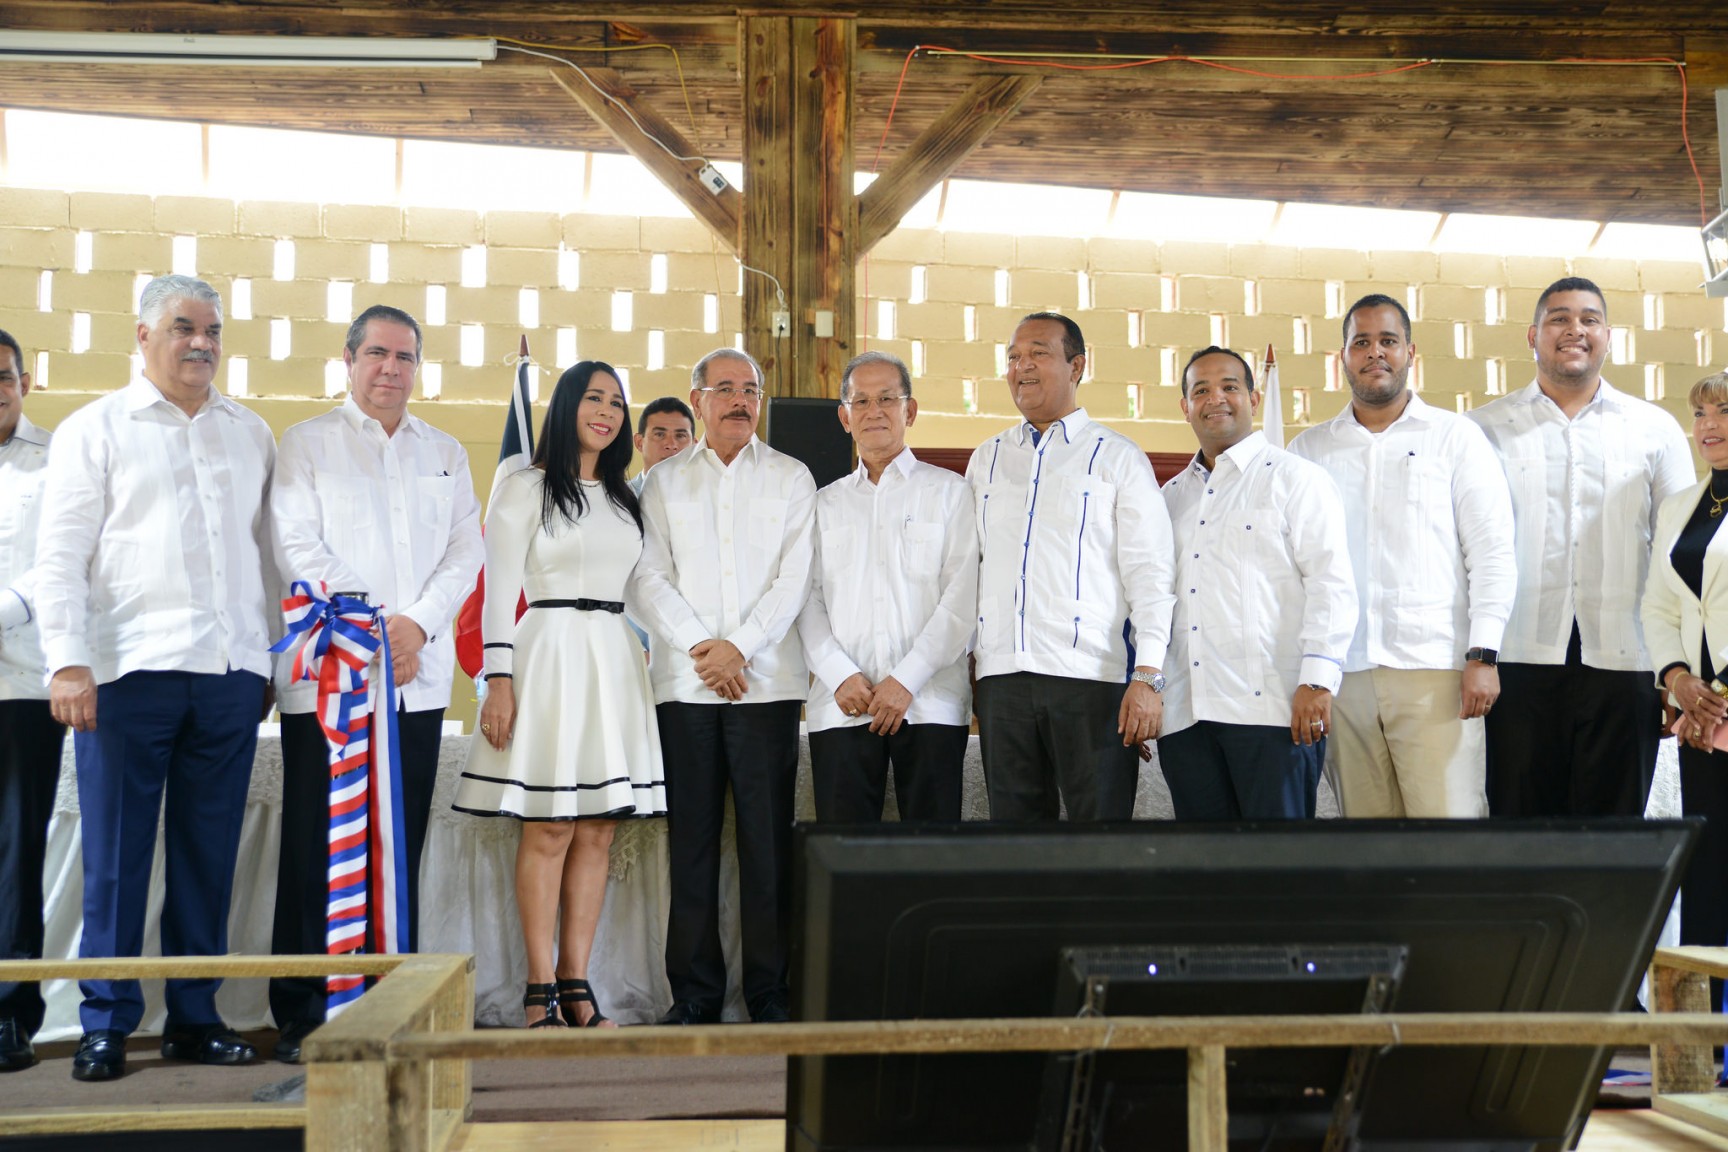 REPÚBLICA DOMINICANA: Turismo ecológico crece en Bonao. Danilo Medina asiste acto inaugural Rancho Guacamayos